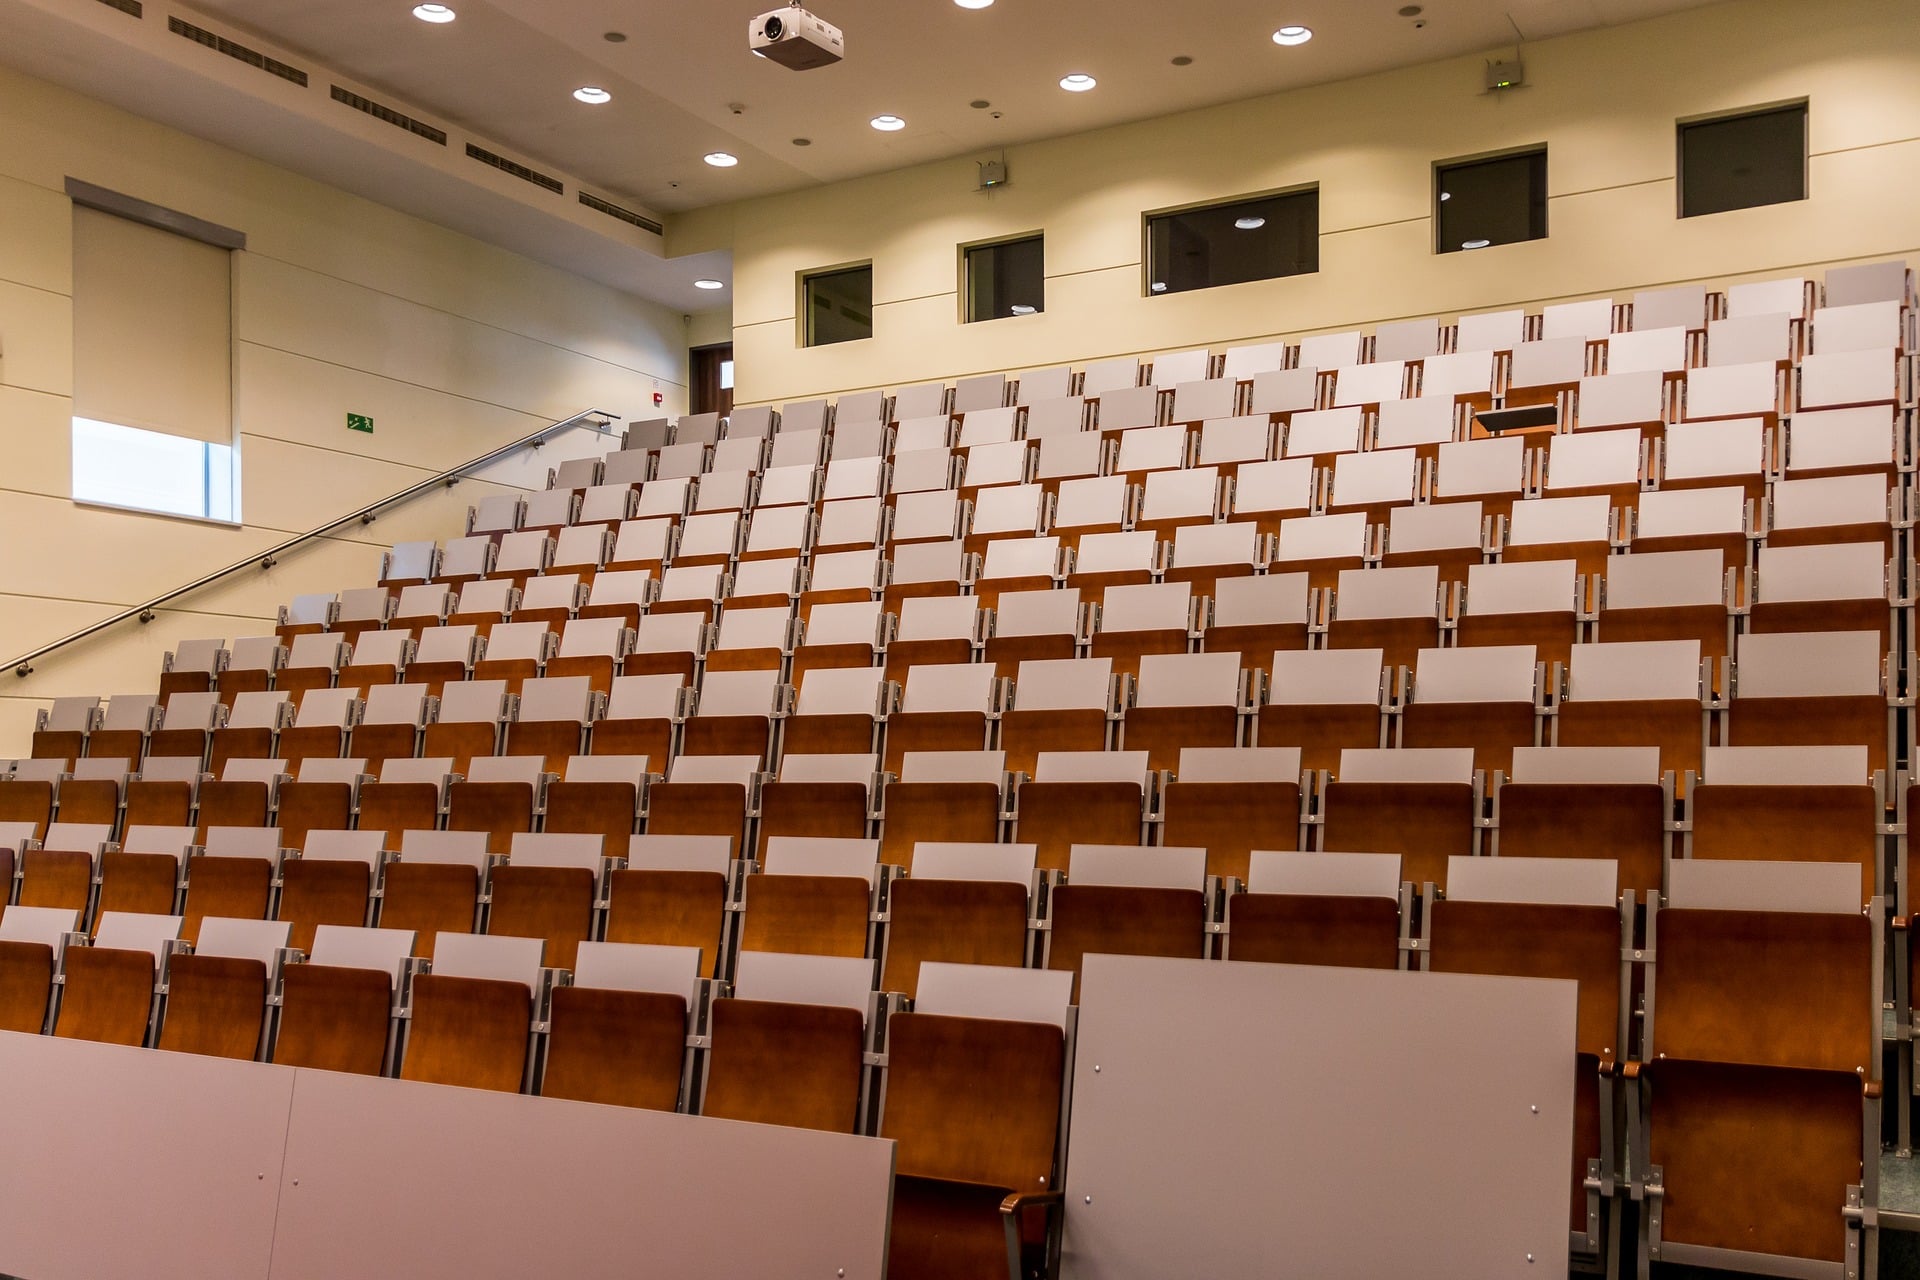 Blick in einen abgetreppten, leeren Hörsaal mit hölzernen, hochgeklappten Sitzen. In Deutschland kann an mehreren Universitäten Landschaftsarchitektur studiert werden. Foto: Michal Jarmoluk via Pixabay